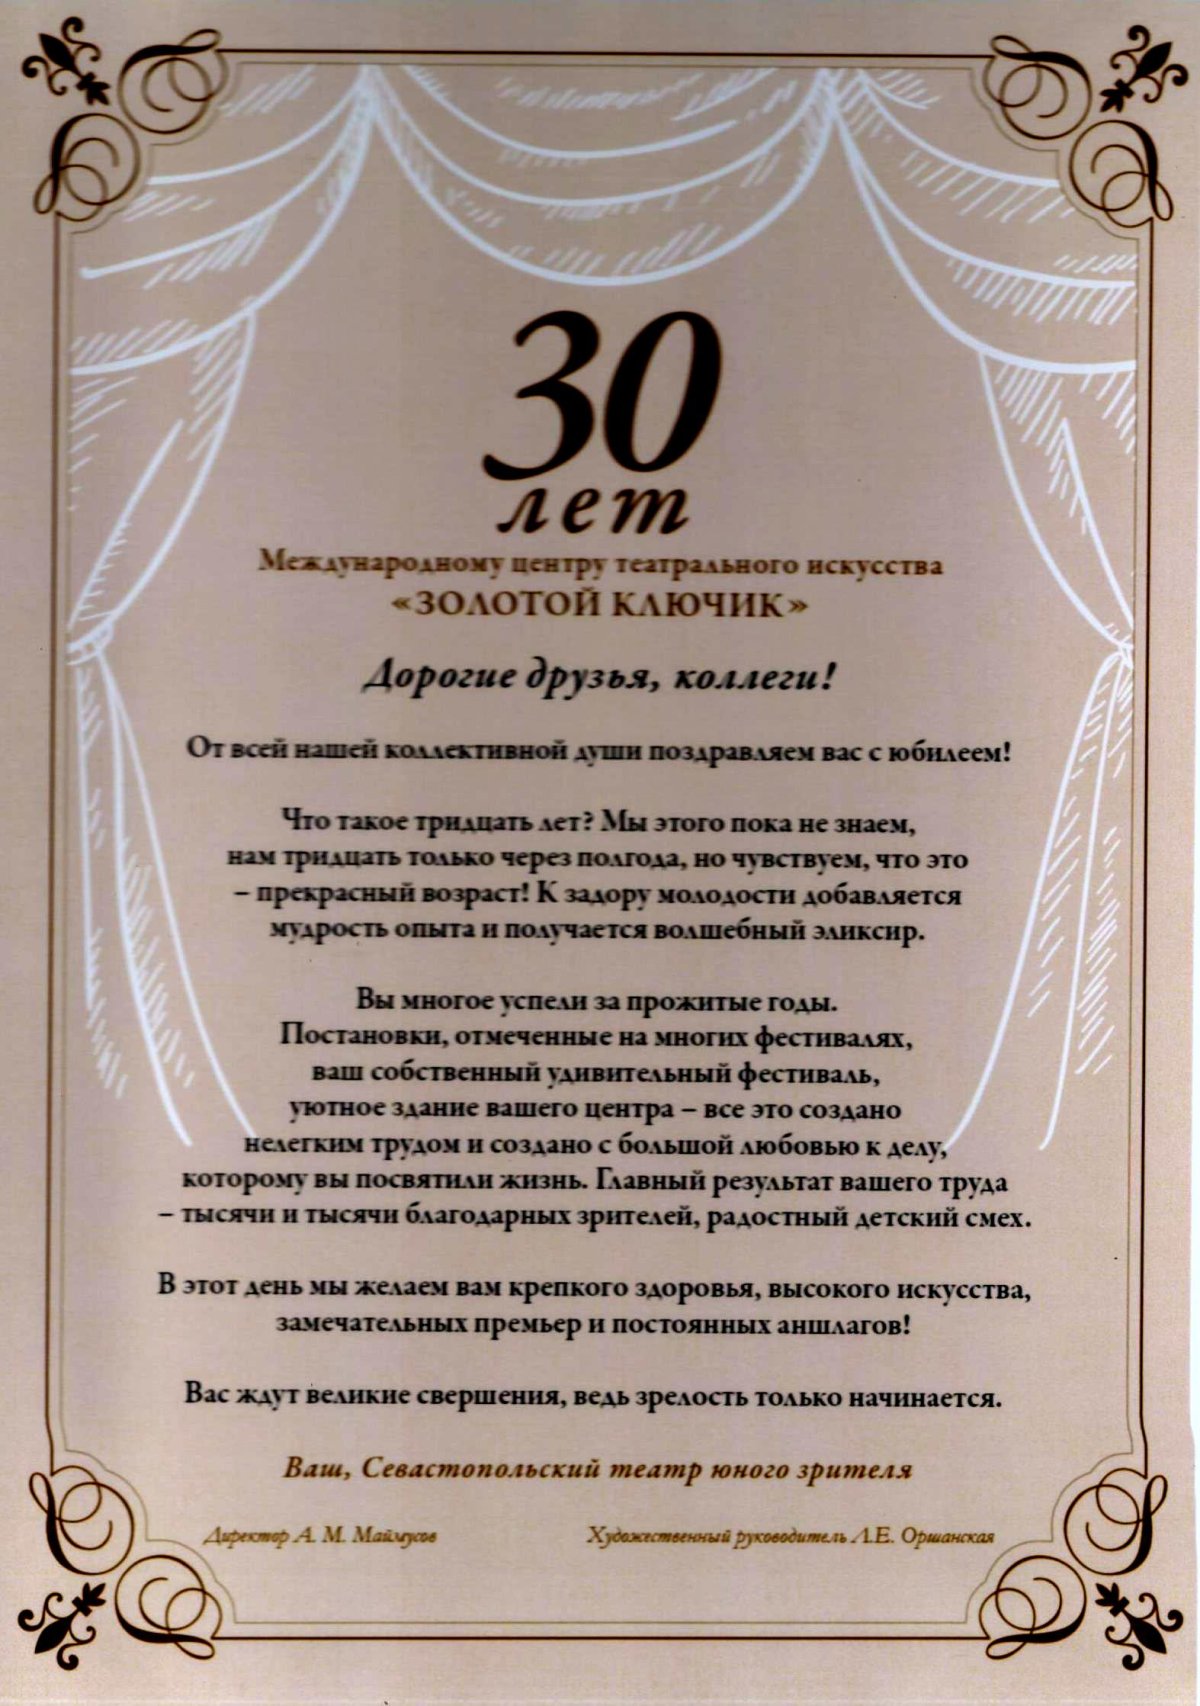 30 лет организации поздравления